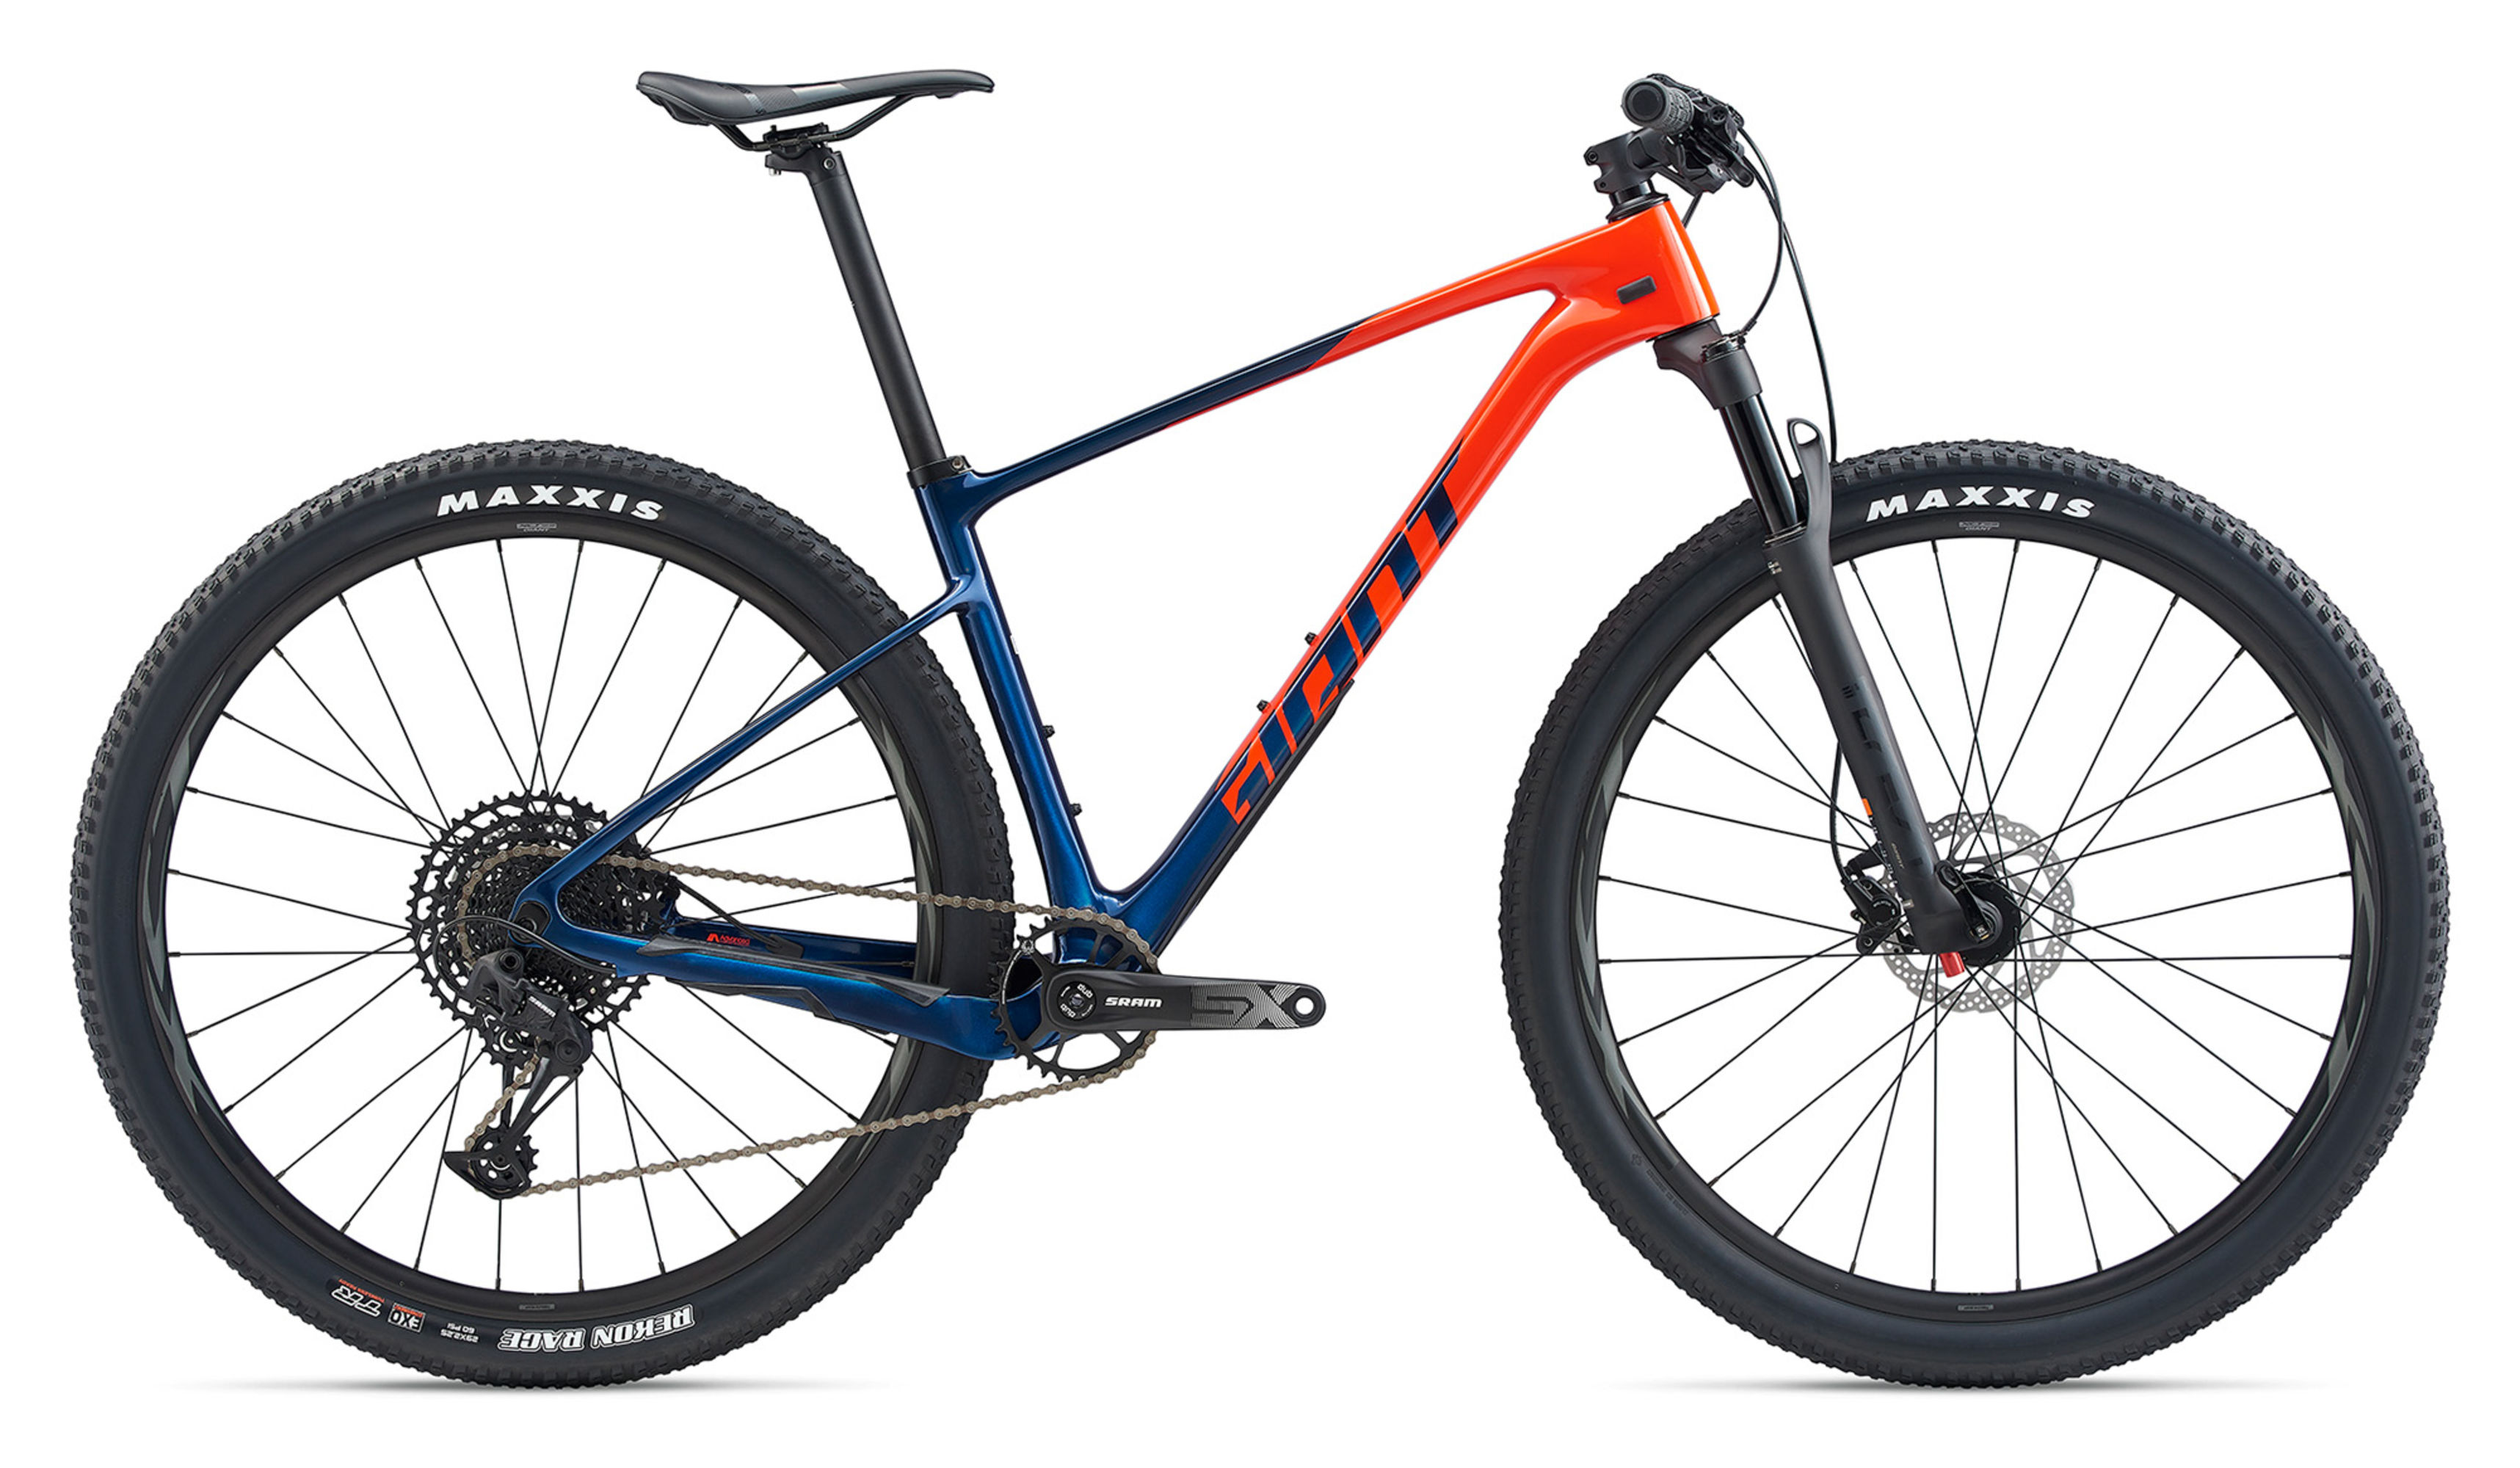  Отзывы о Горном велосипеде Giant XTC Advanced 29 3 2020